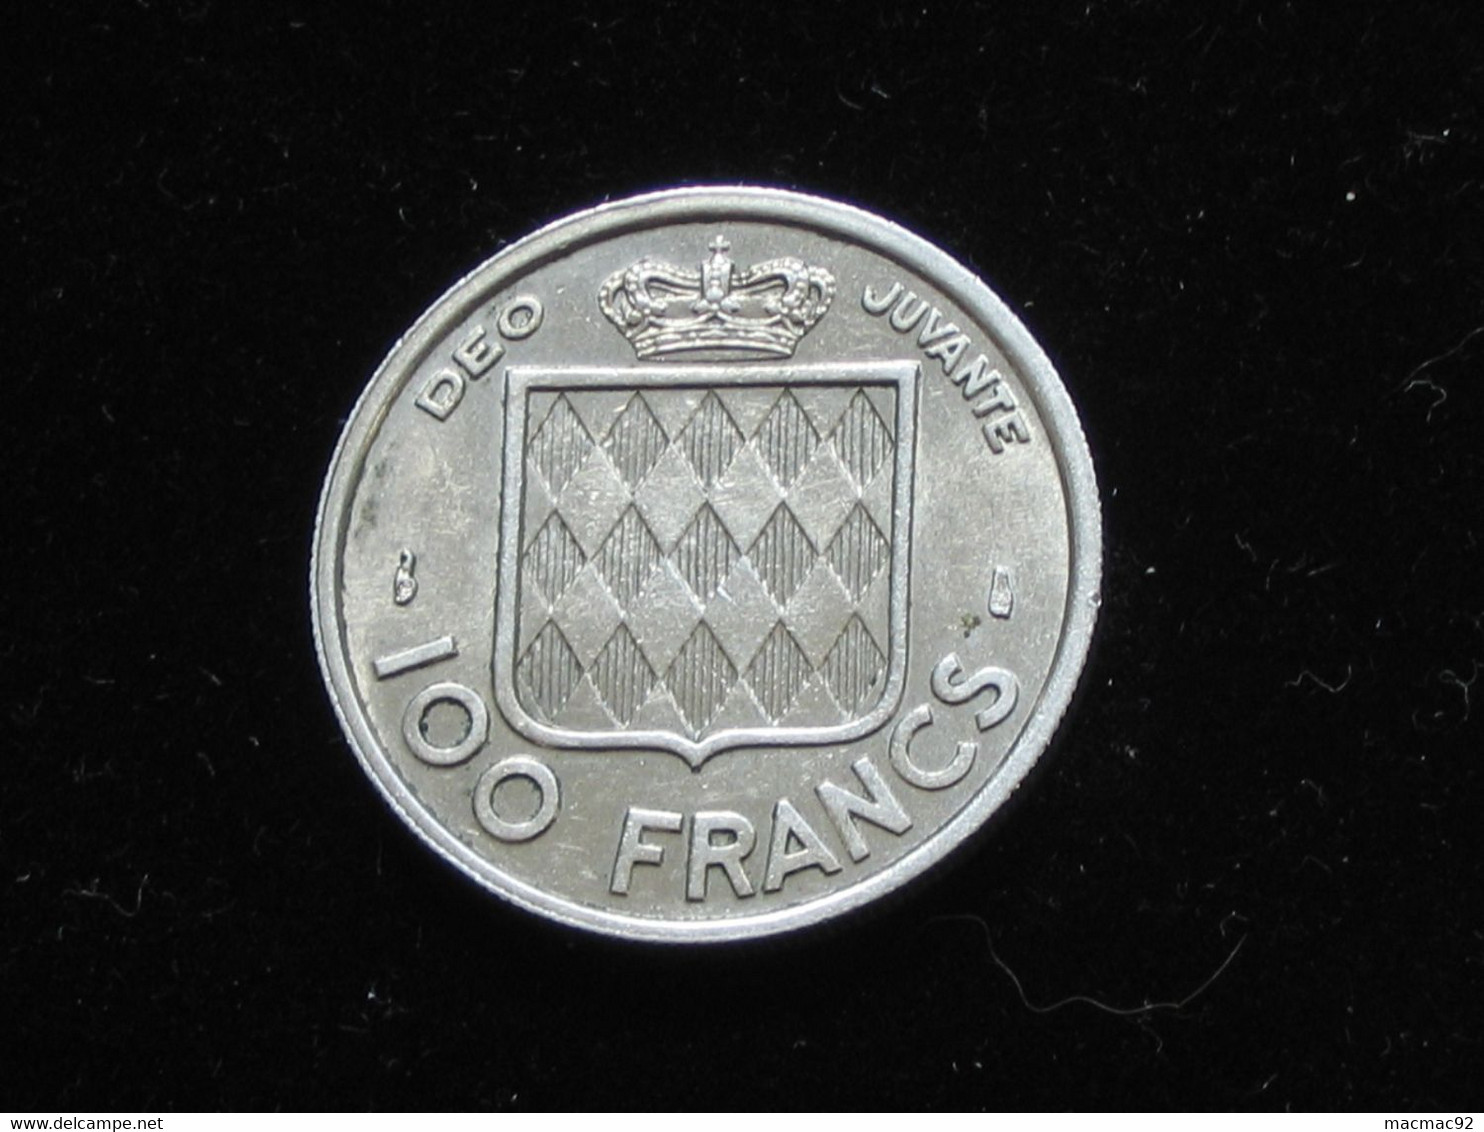 MONACO - 100 Frs 1956 - Rainier III Prince De Monaco **** EN ACHAT IMMEDIAT **** - 1949-1956 Francos Antiguos